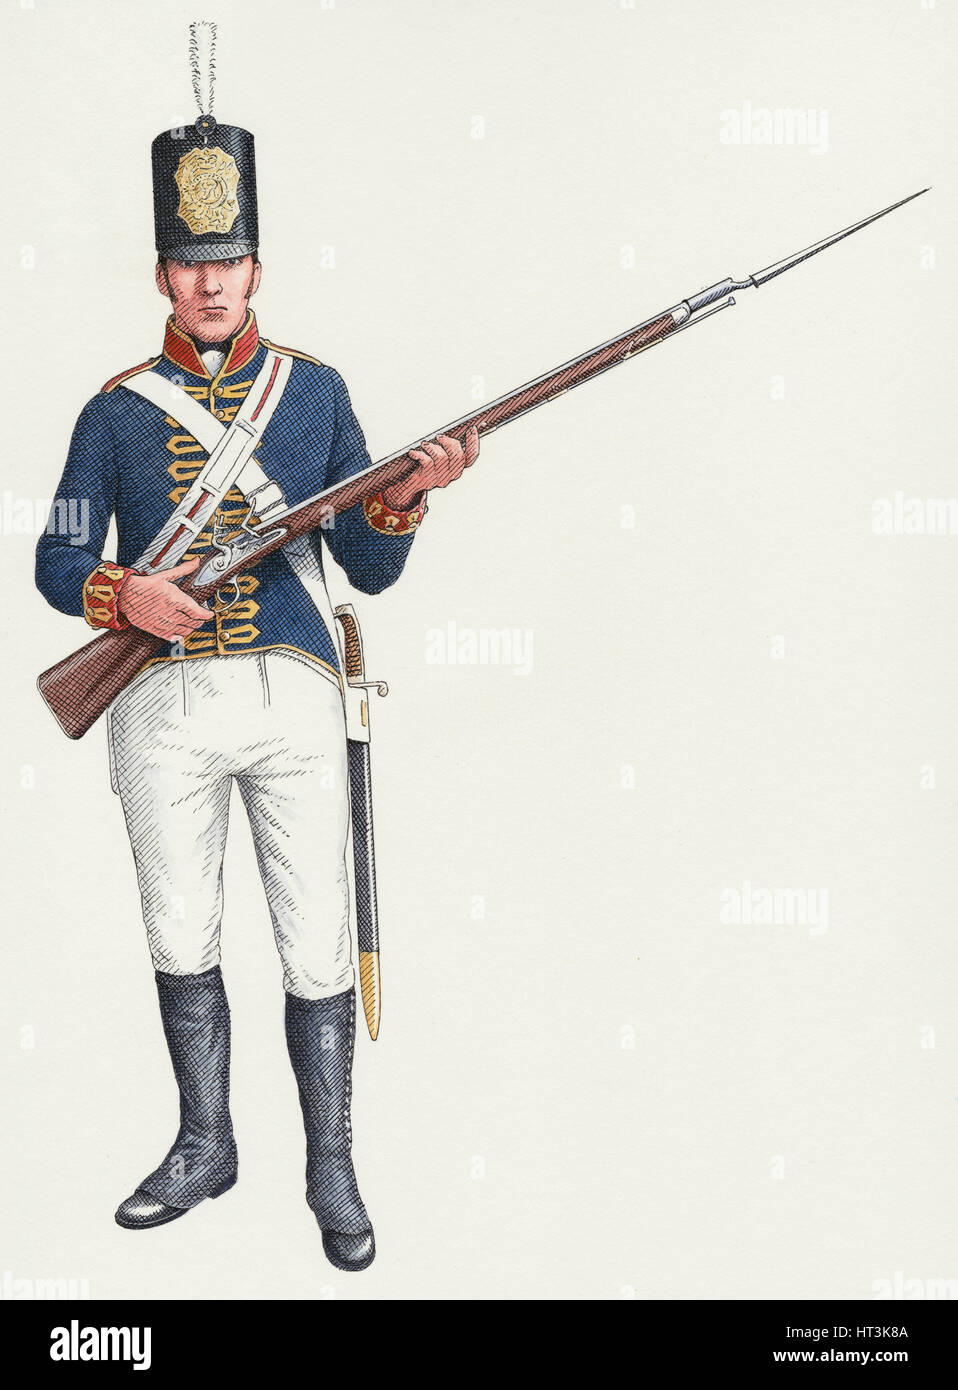 Napoleonischen gewöhnlicher Schütze aus einer königlichen Artillerie ungültig regiment 1803-15, (c2000-2015) Stockfoto